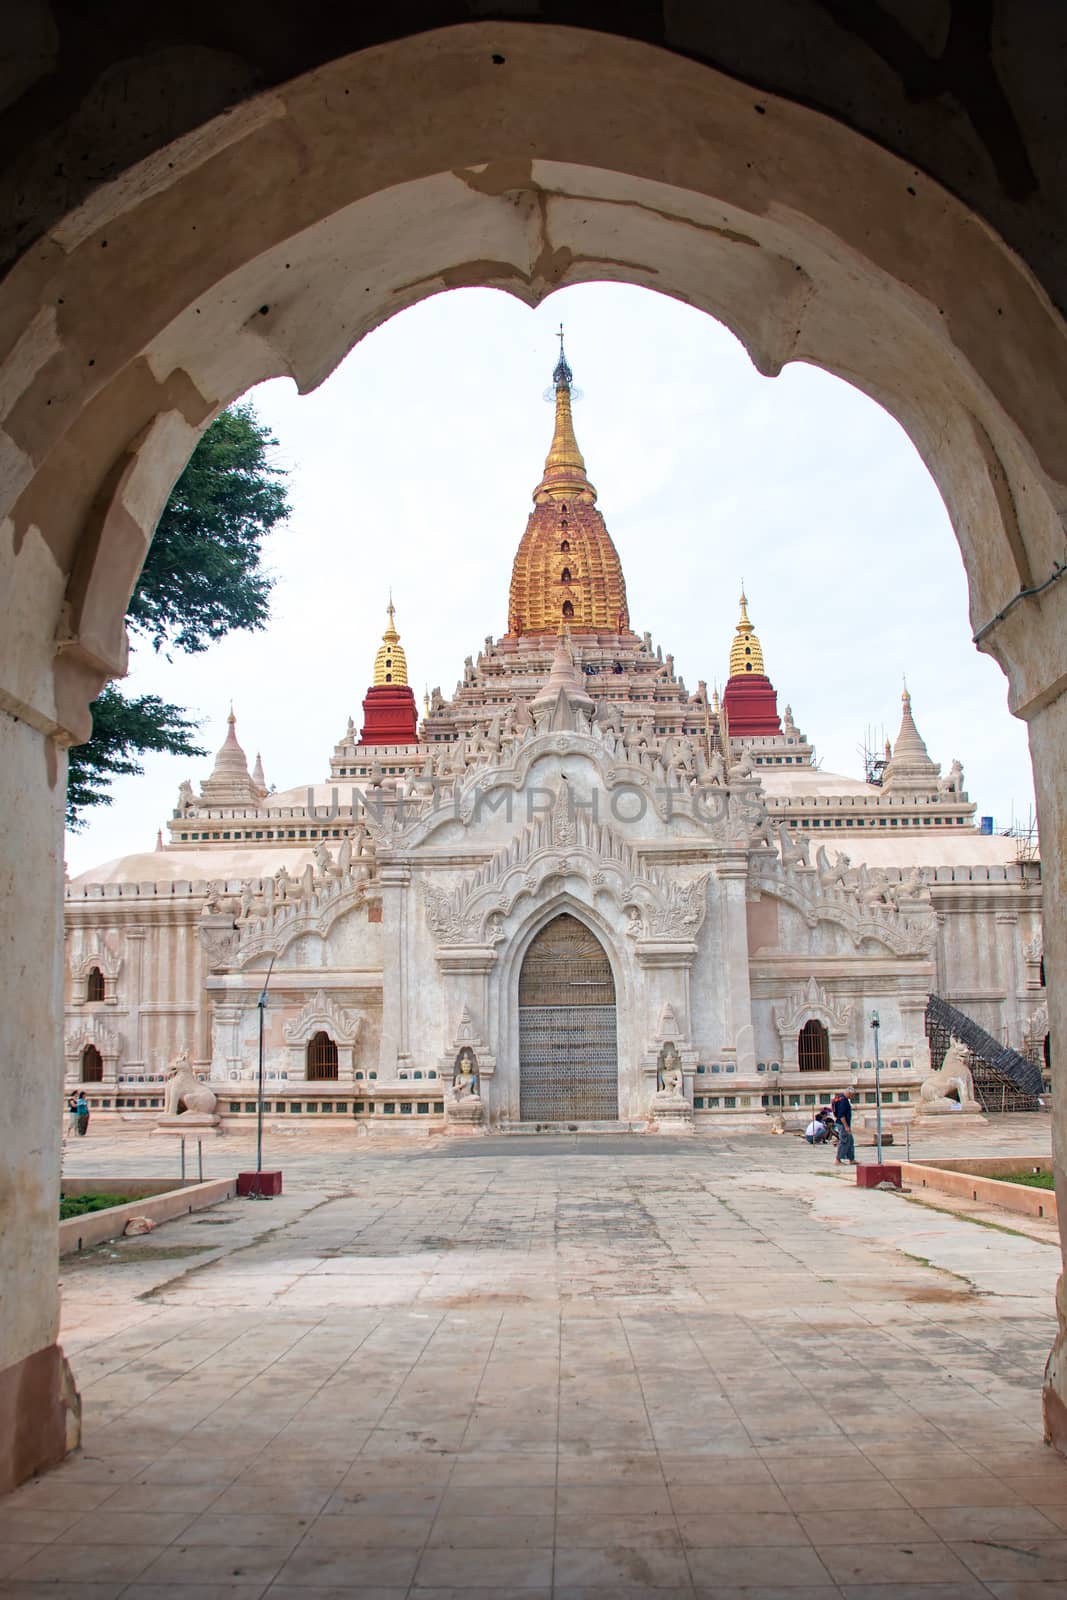  Ananda temple in Bagan , Myanmar